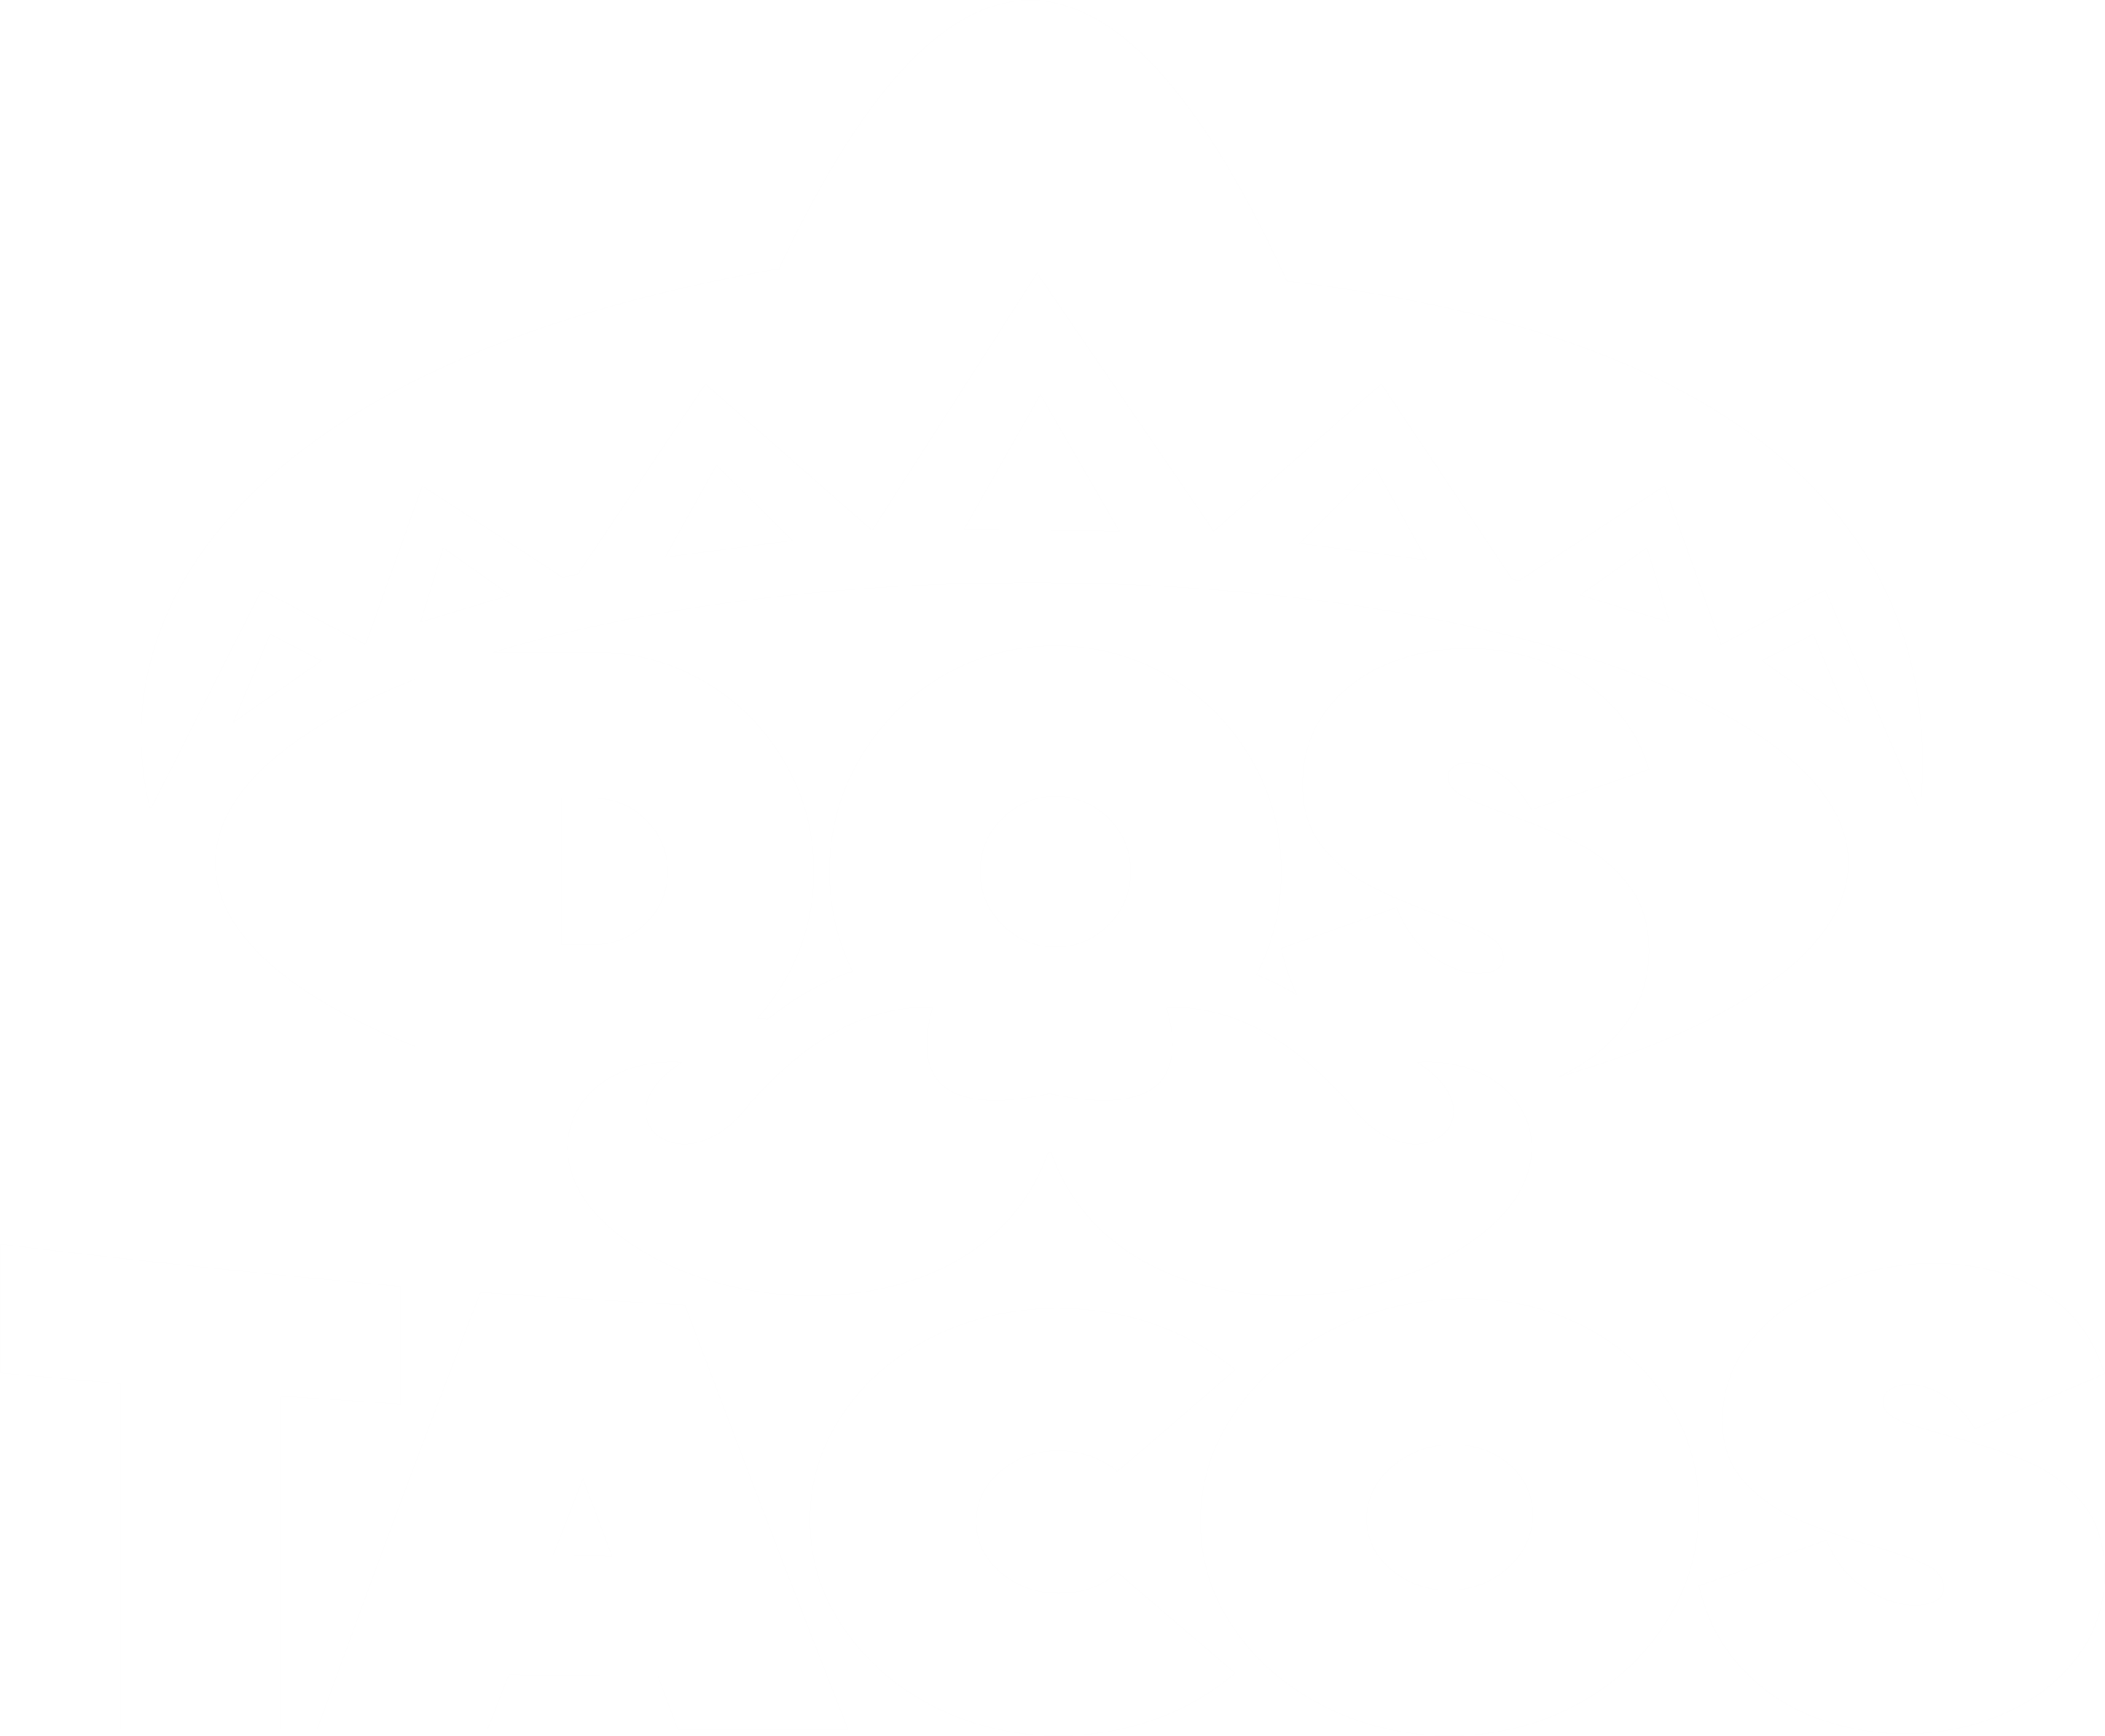 The Dos Tacos